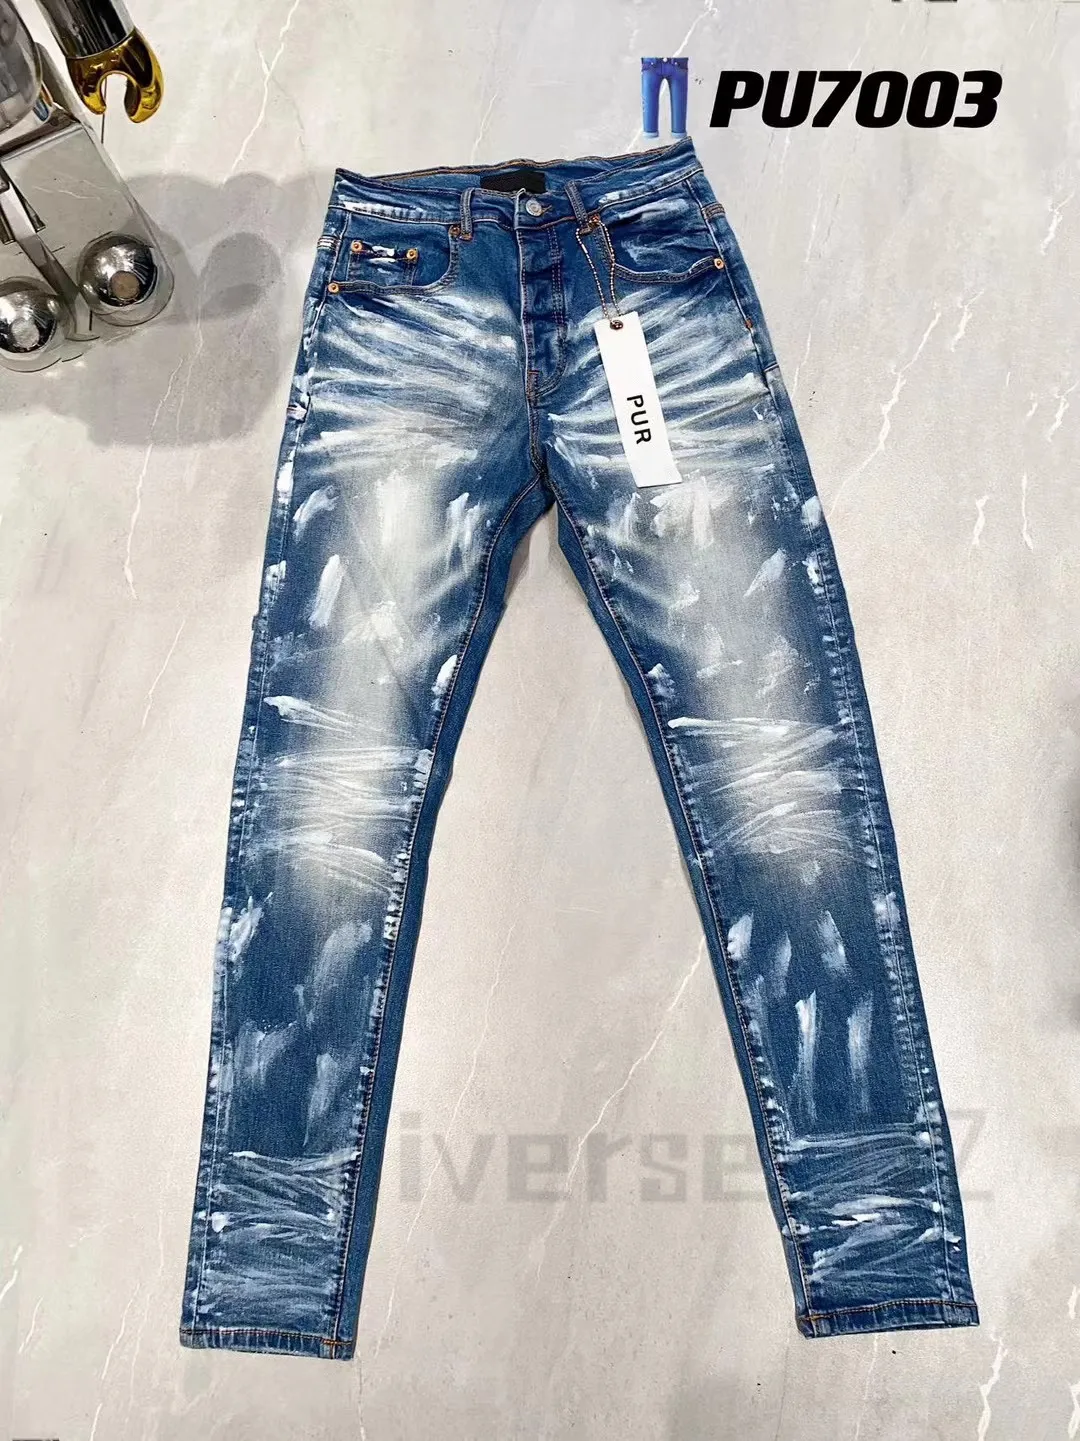 Nuovi jeans viola da uomo di alta qualità Jeans firmati Moda cargo in denim strappato effetto consumato per uomo High Street Fashion blue Jeans da donna Jeans revival rock da uomoZASQ